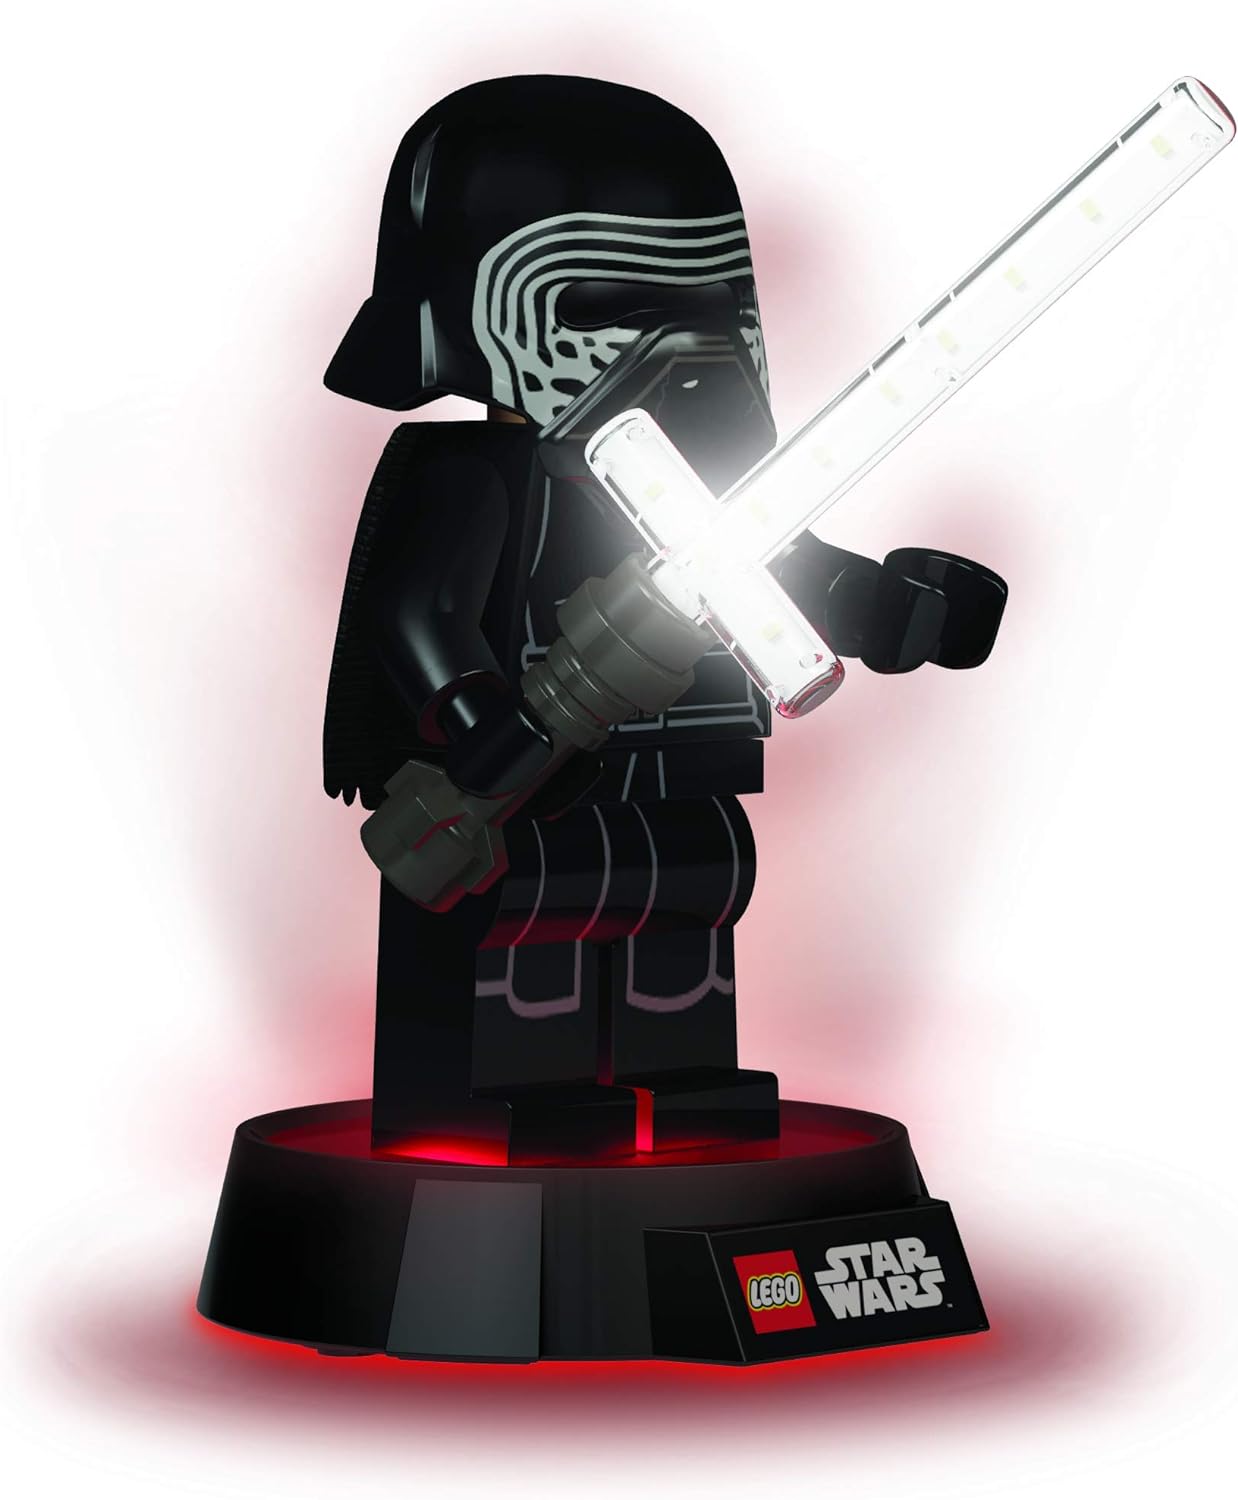 楽天市場 レゴ スターウォーズ 送料無料 Lego Star Wars Kylo Ren Led Desk Lampレゴ スターウォーズ Angelica